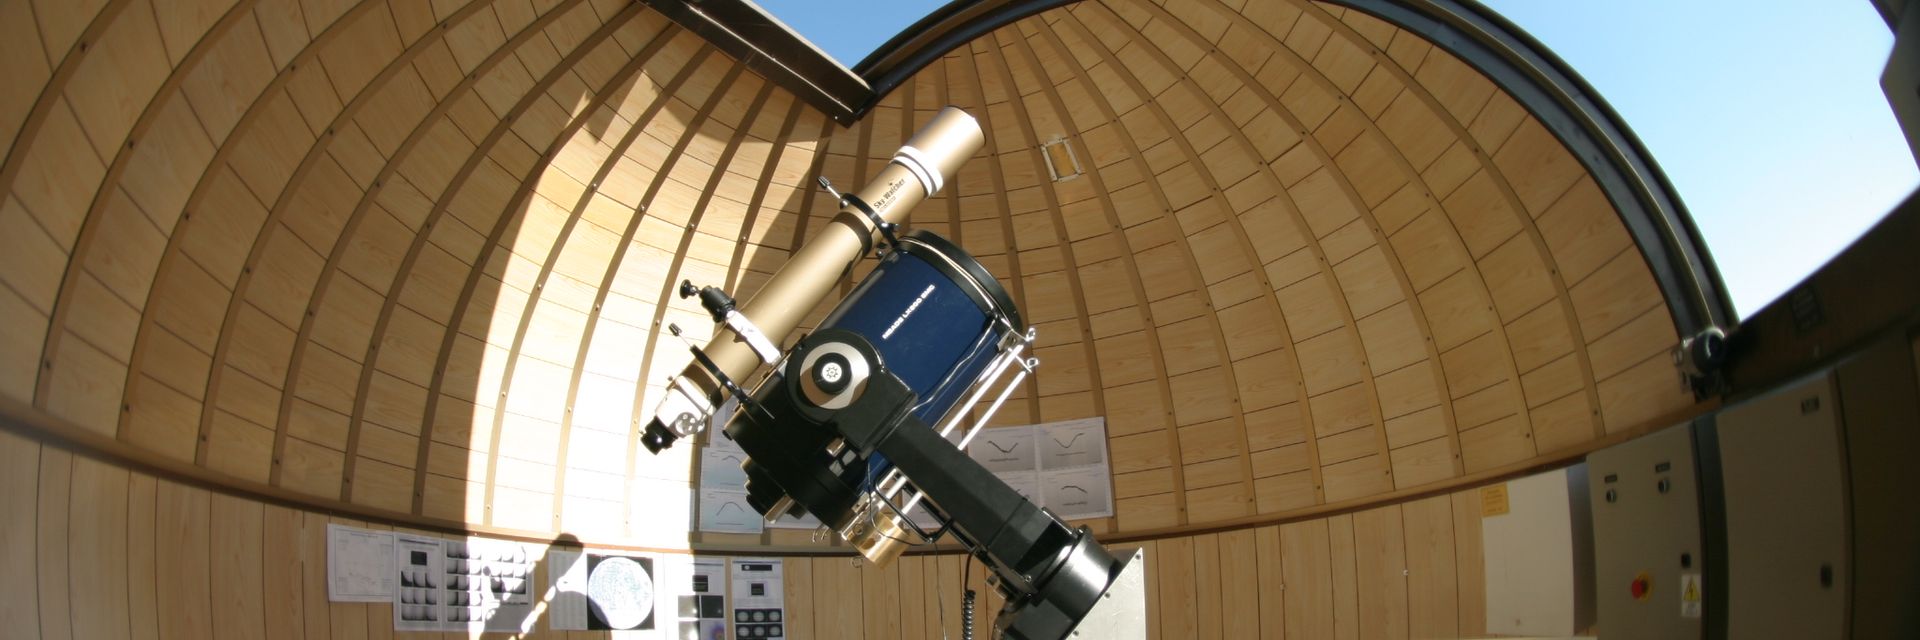 Observatorio Astronómico de Siena